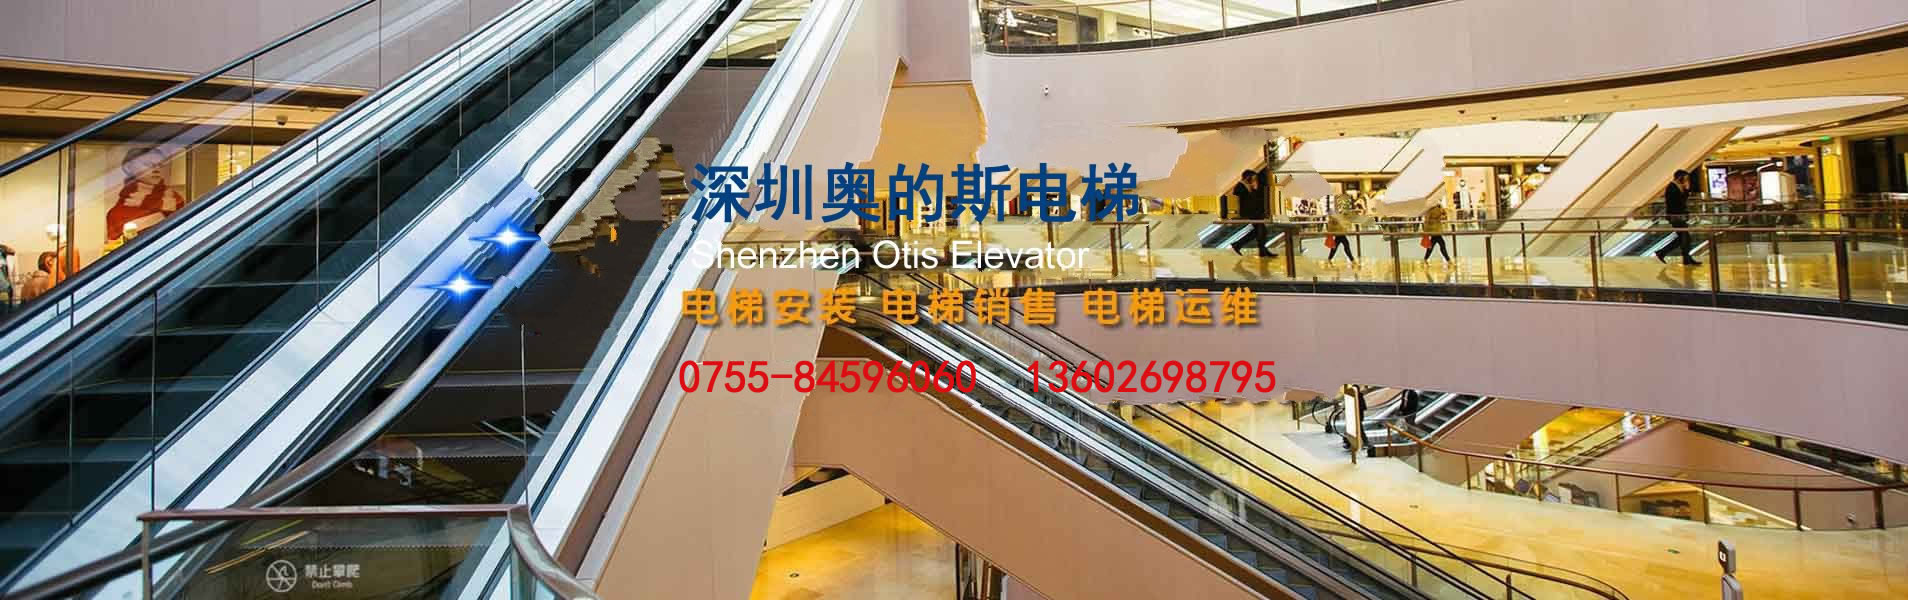 深圳市奧的斯電梯工程公司